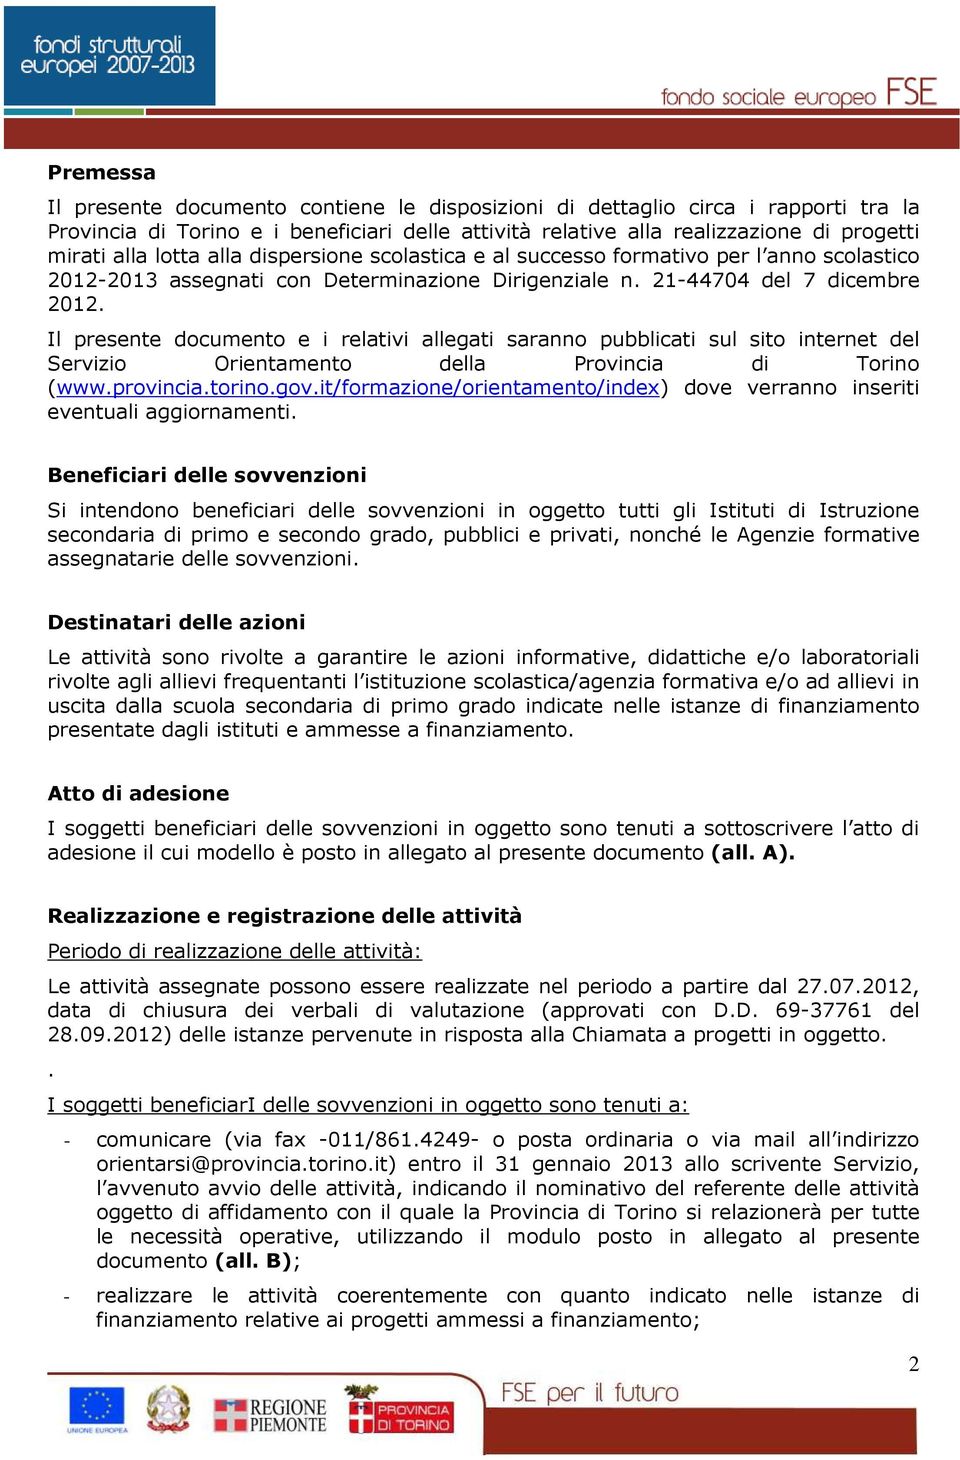 Il presente documento e i relativi allegati saranno pubblicati sul sito internet del Servizio Orientamento della Provincia di Torino (www.provincia.torino.gov.